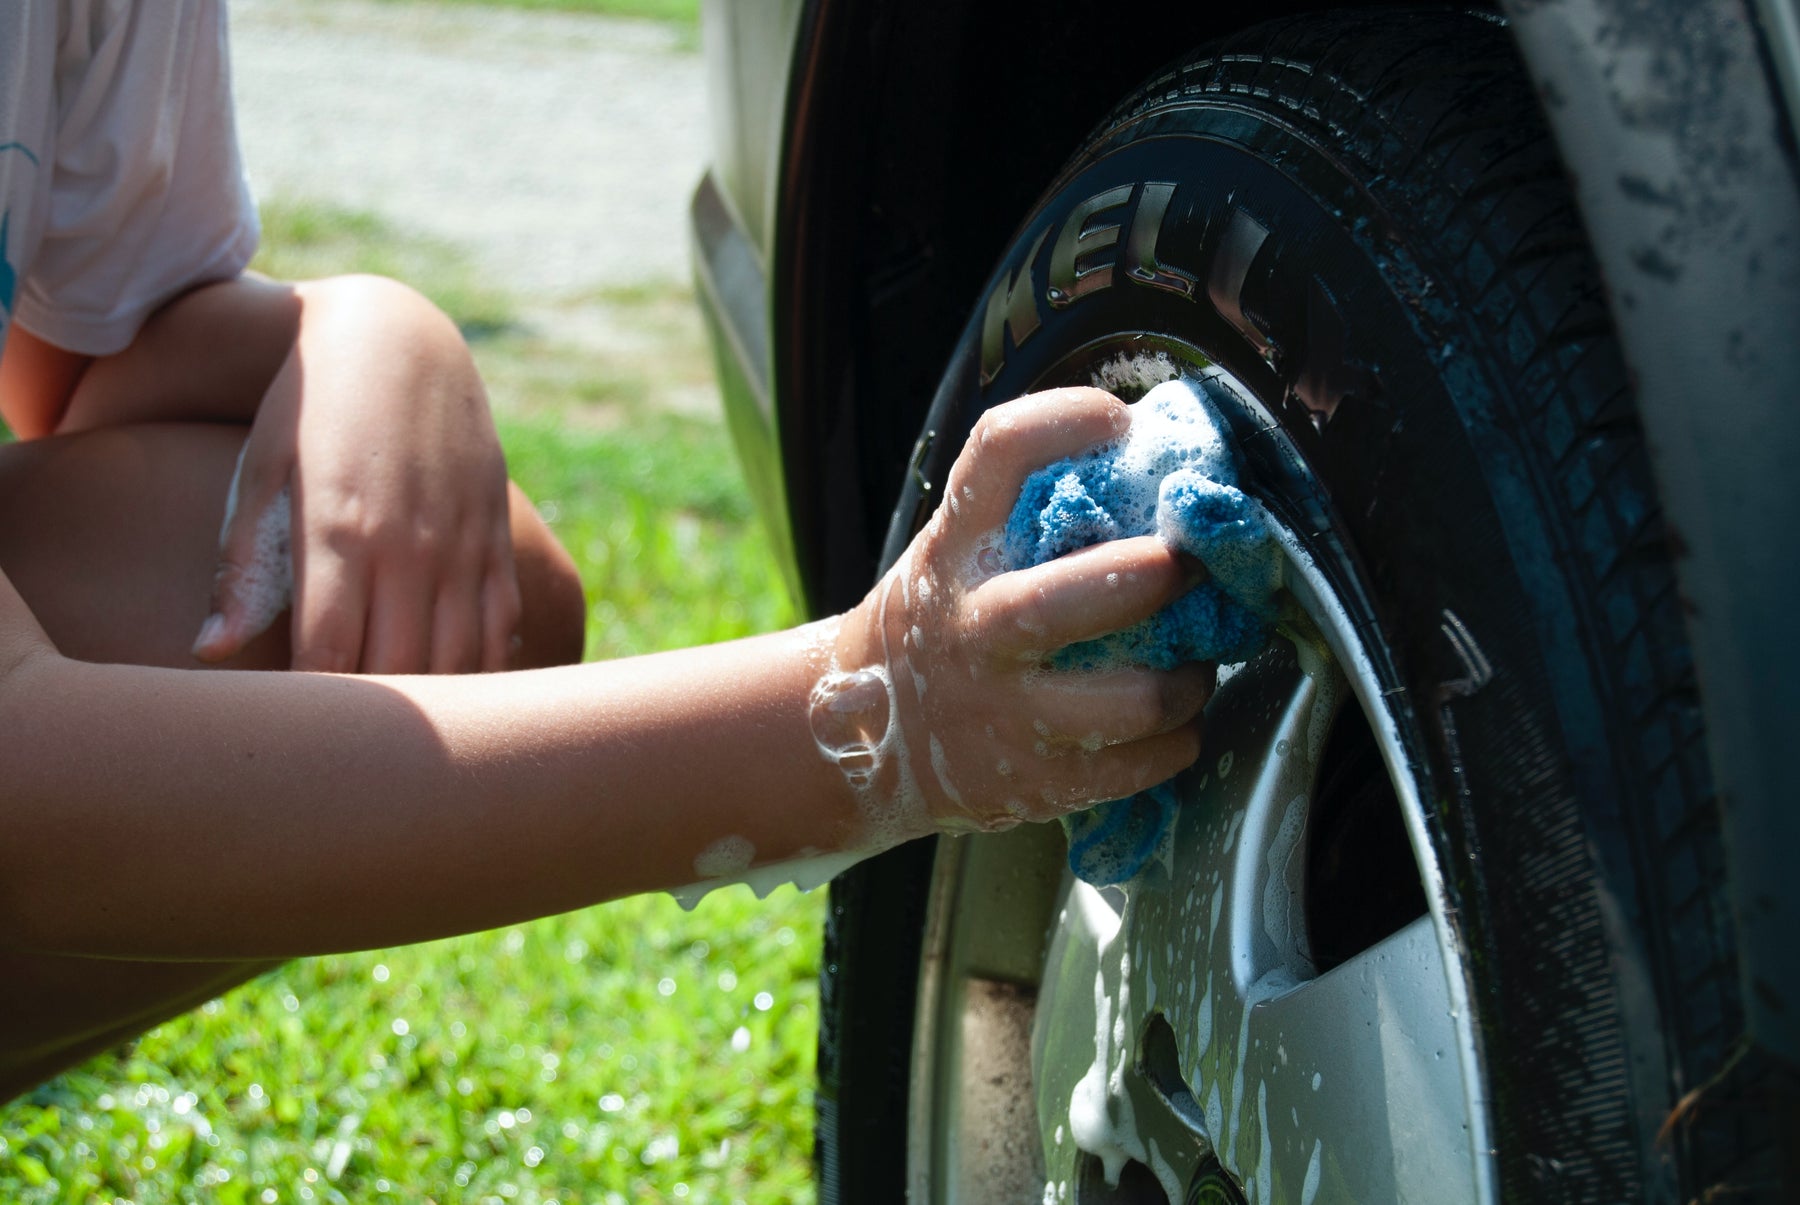 How to Clean a Car Wash Mitt